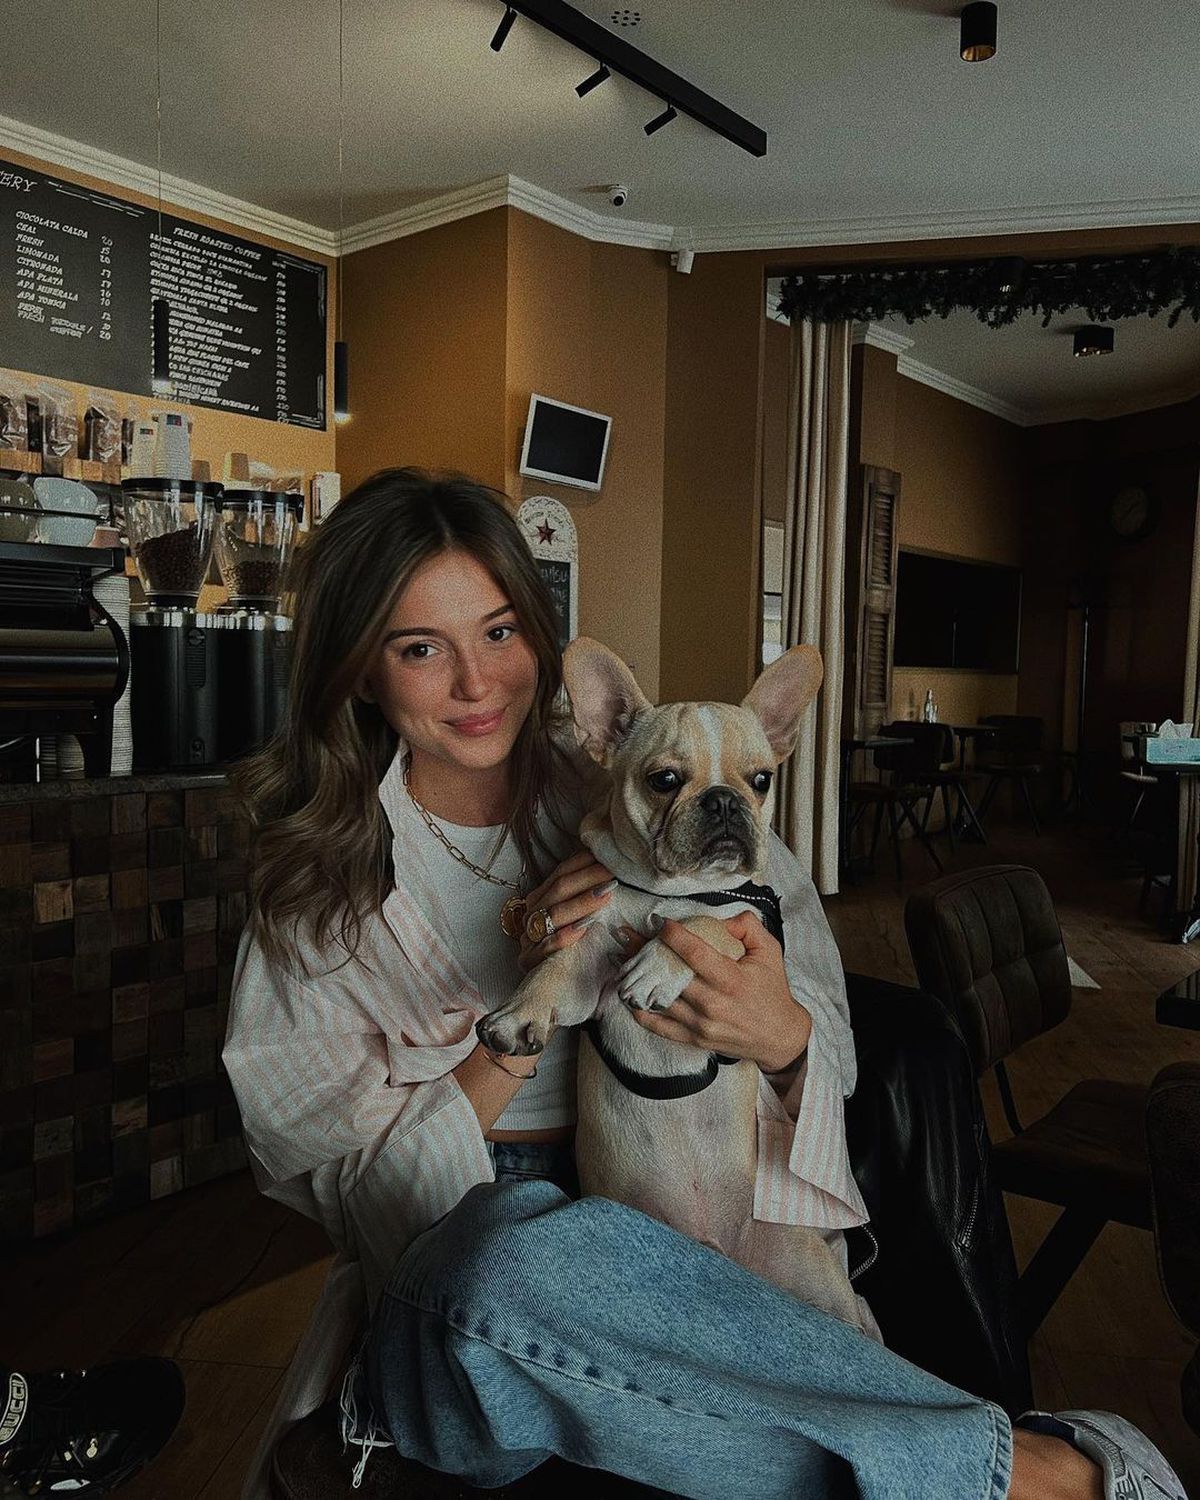 Teodora Stoica, postare îndrăzneață pe Instagram înainte de Derby de România: „Mi s-a spus să nu postez prima poză”